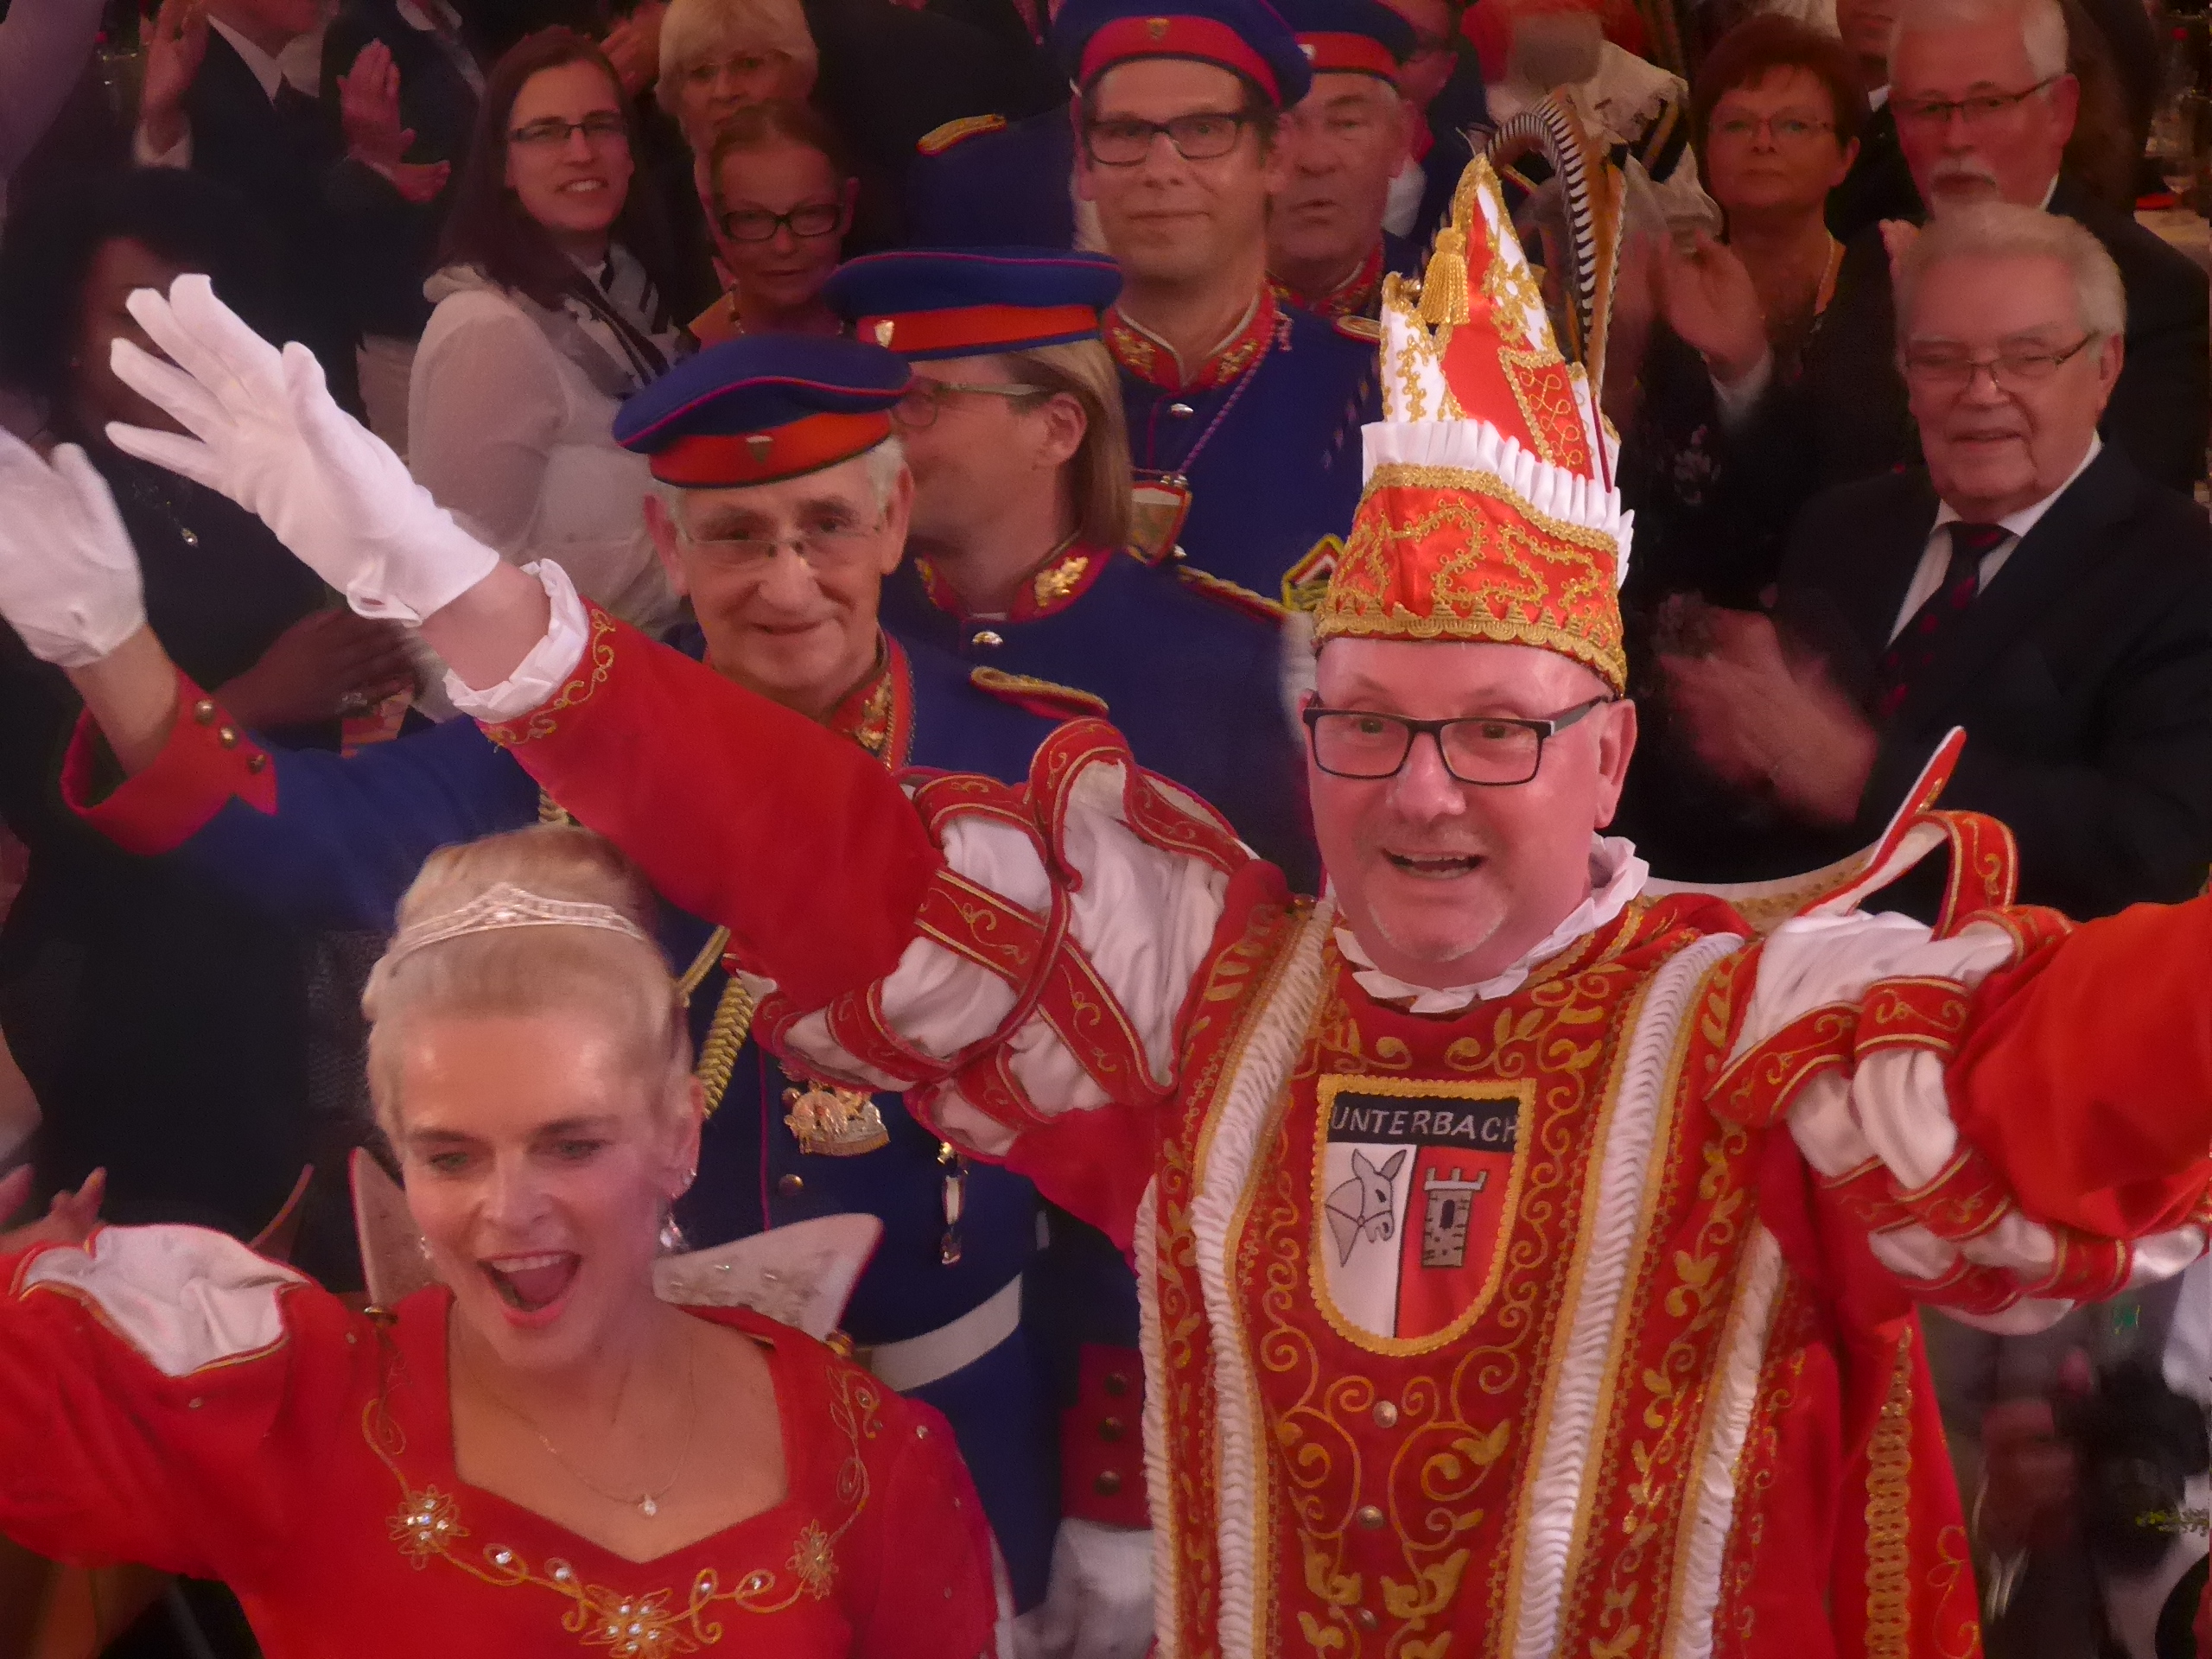 Klaus I. Hammer und Susanne I. Feldmann sind das neue Prinzenpaar für Unterbachs Karnevalisten.